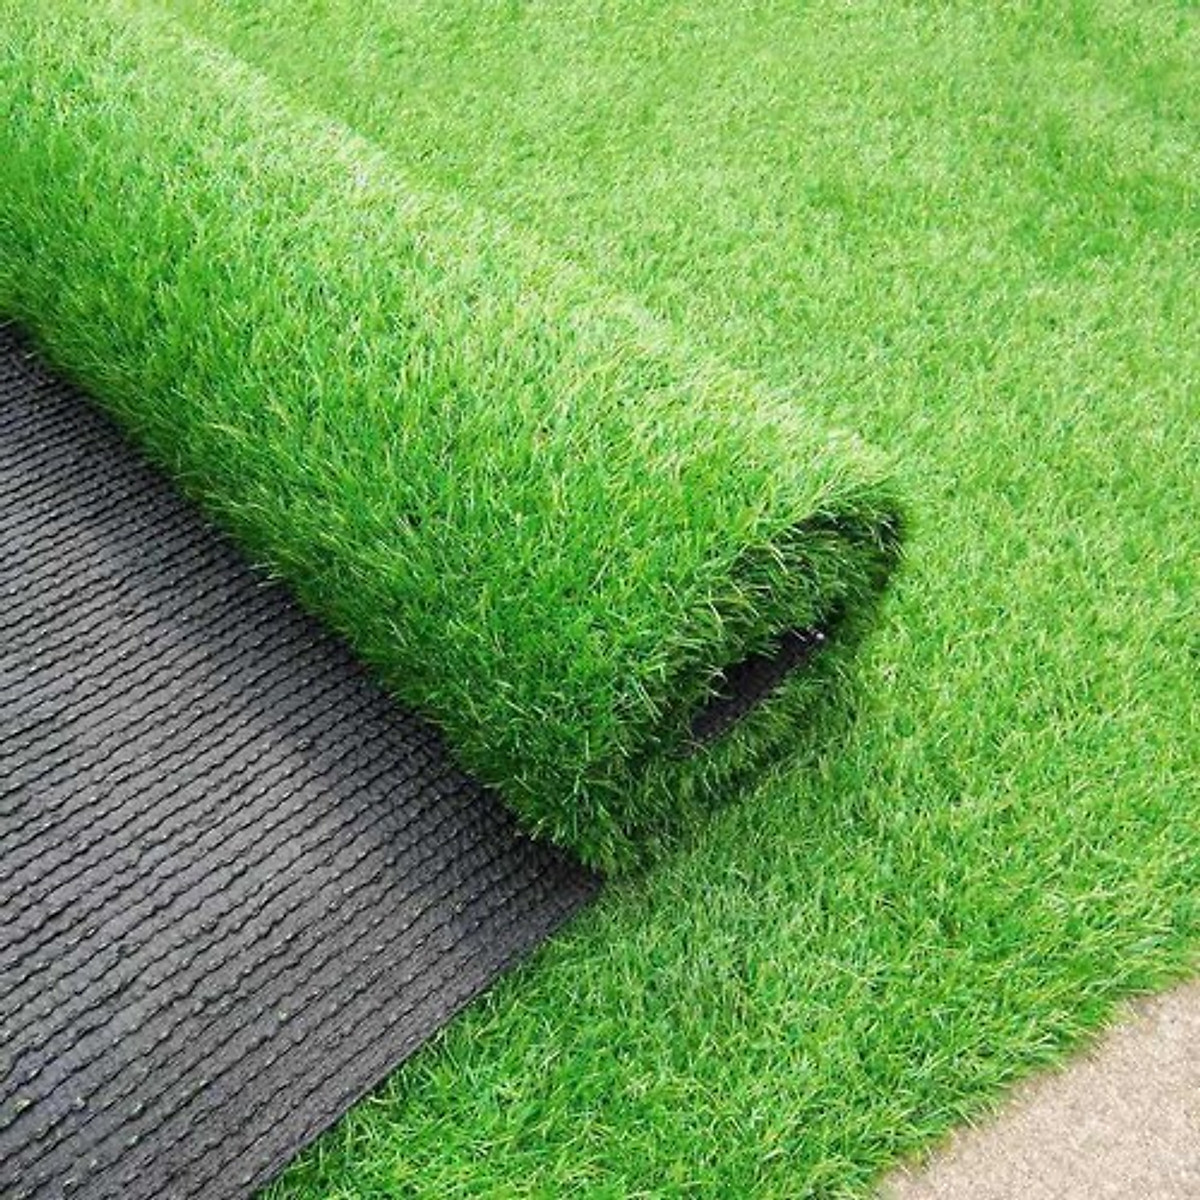 Thảm cỏ nhân tạo 3cm